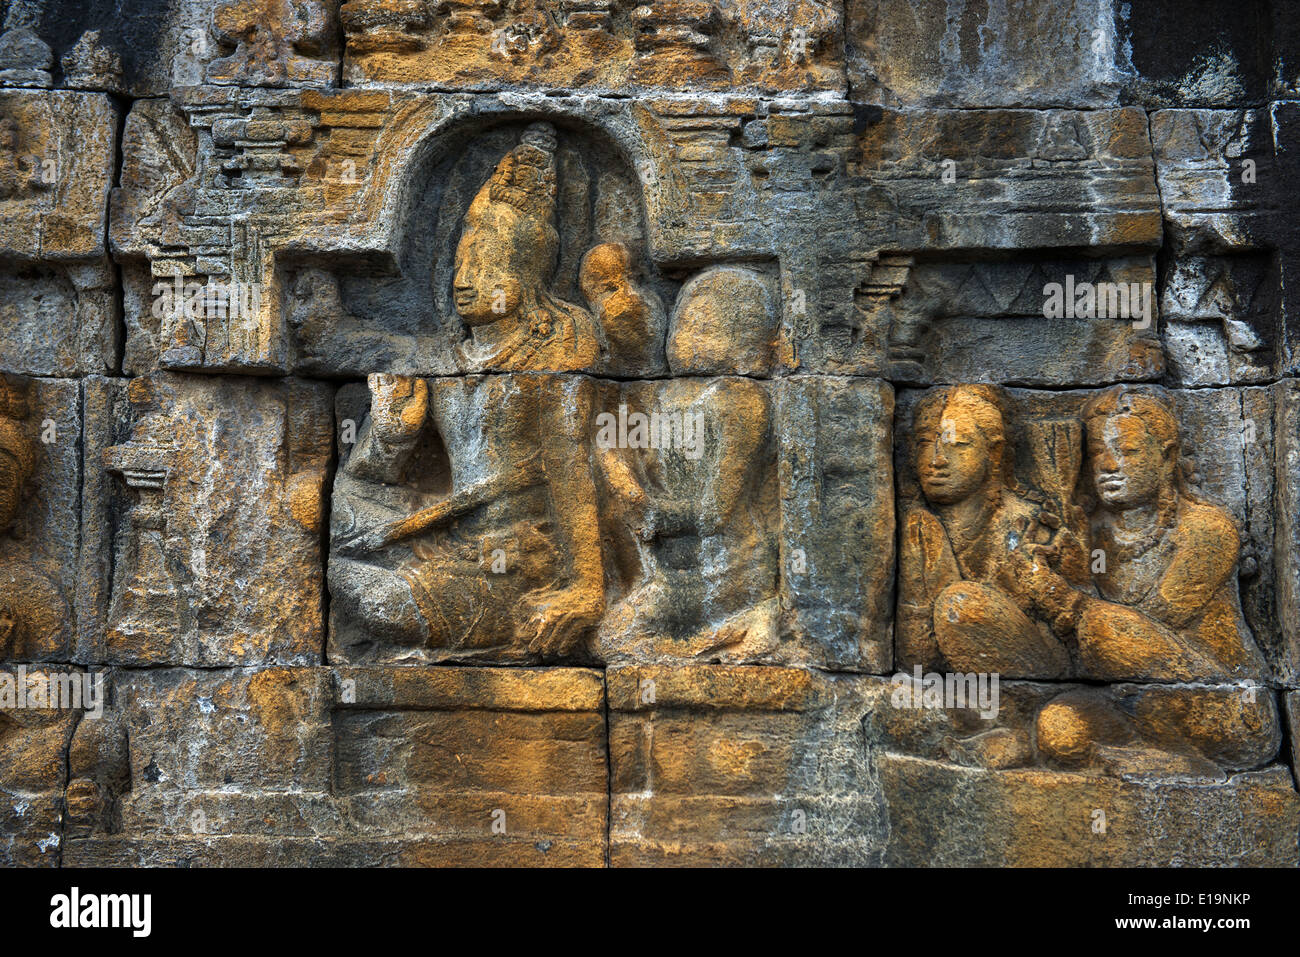 Borobudur, 9th-century Mahayana Buddhist Temple. Waisak Day (Buddha's birthday) draws pilgrim monks from all over Asia. Stock Photo